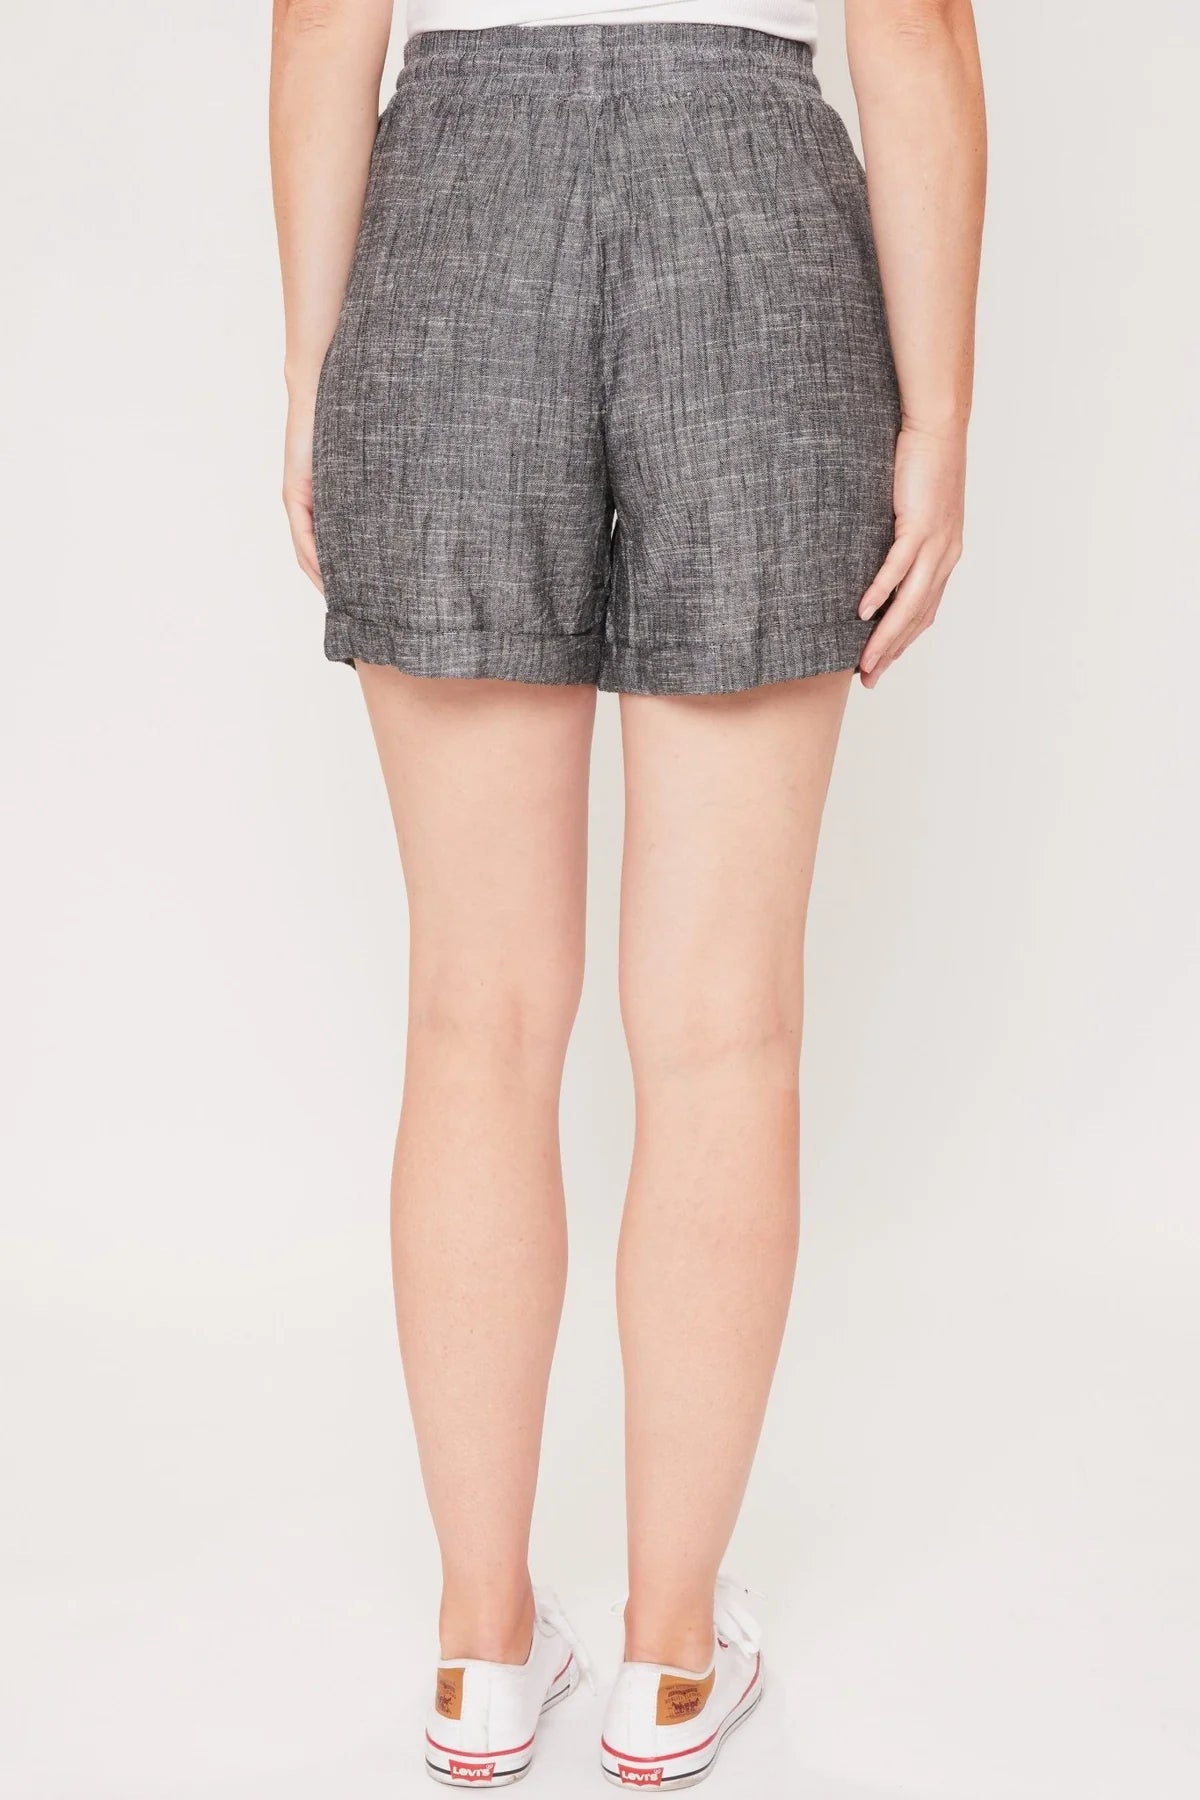 Callie Linen Shorts